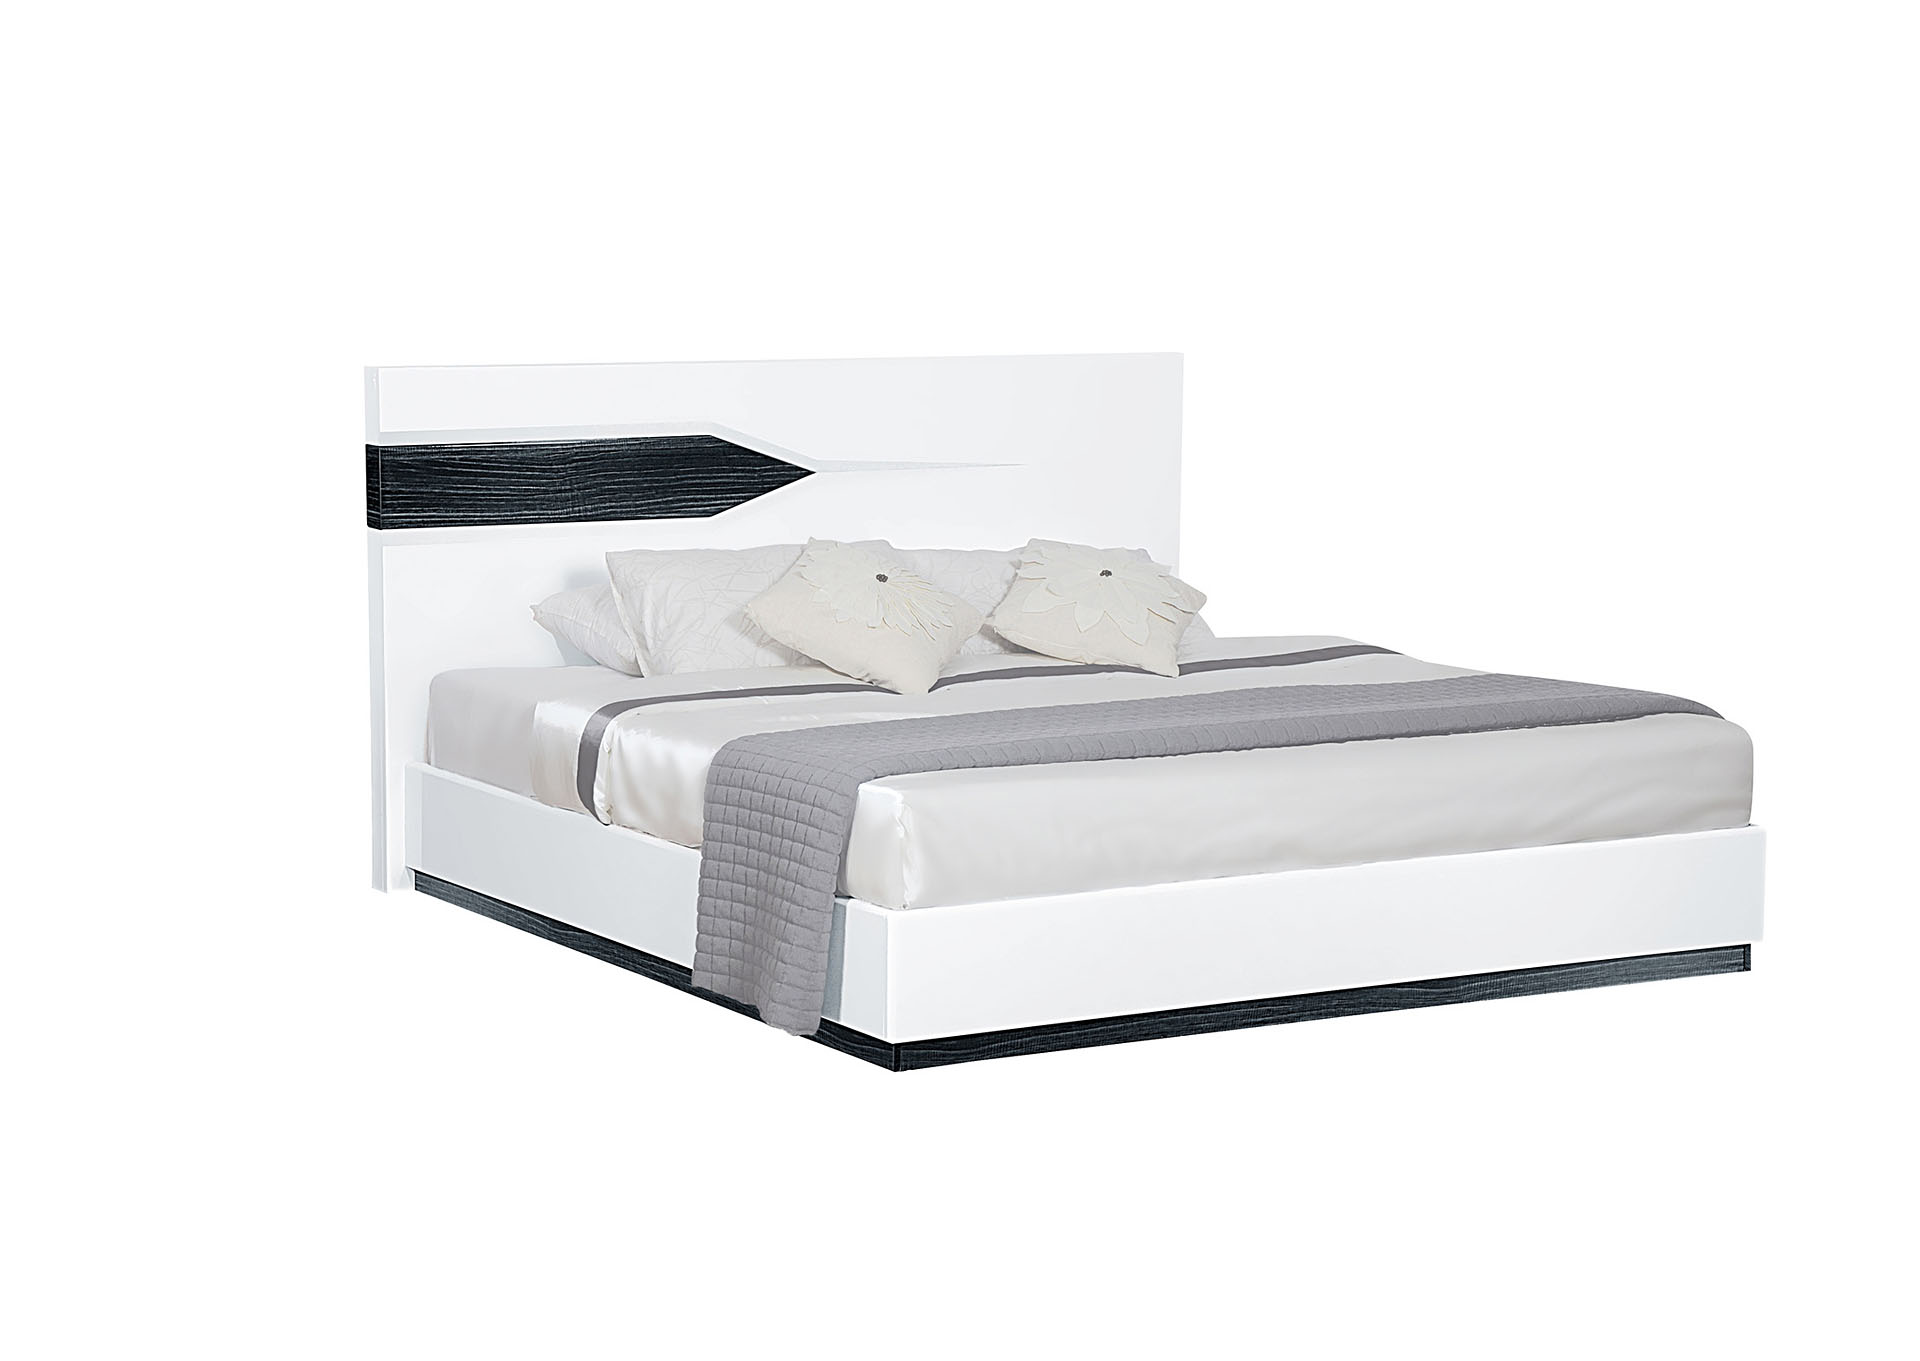 White & Grey Hudson King Bed,Global Furniture USA